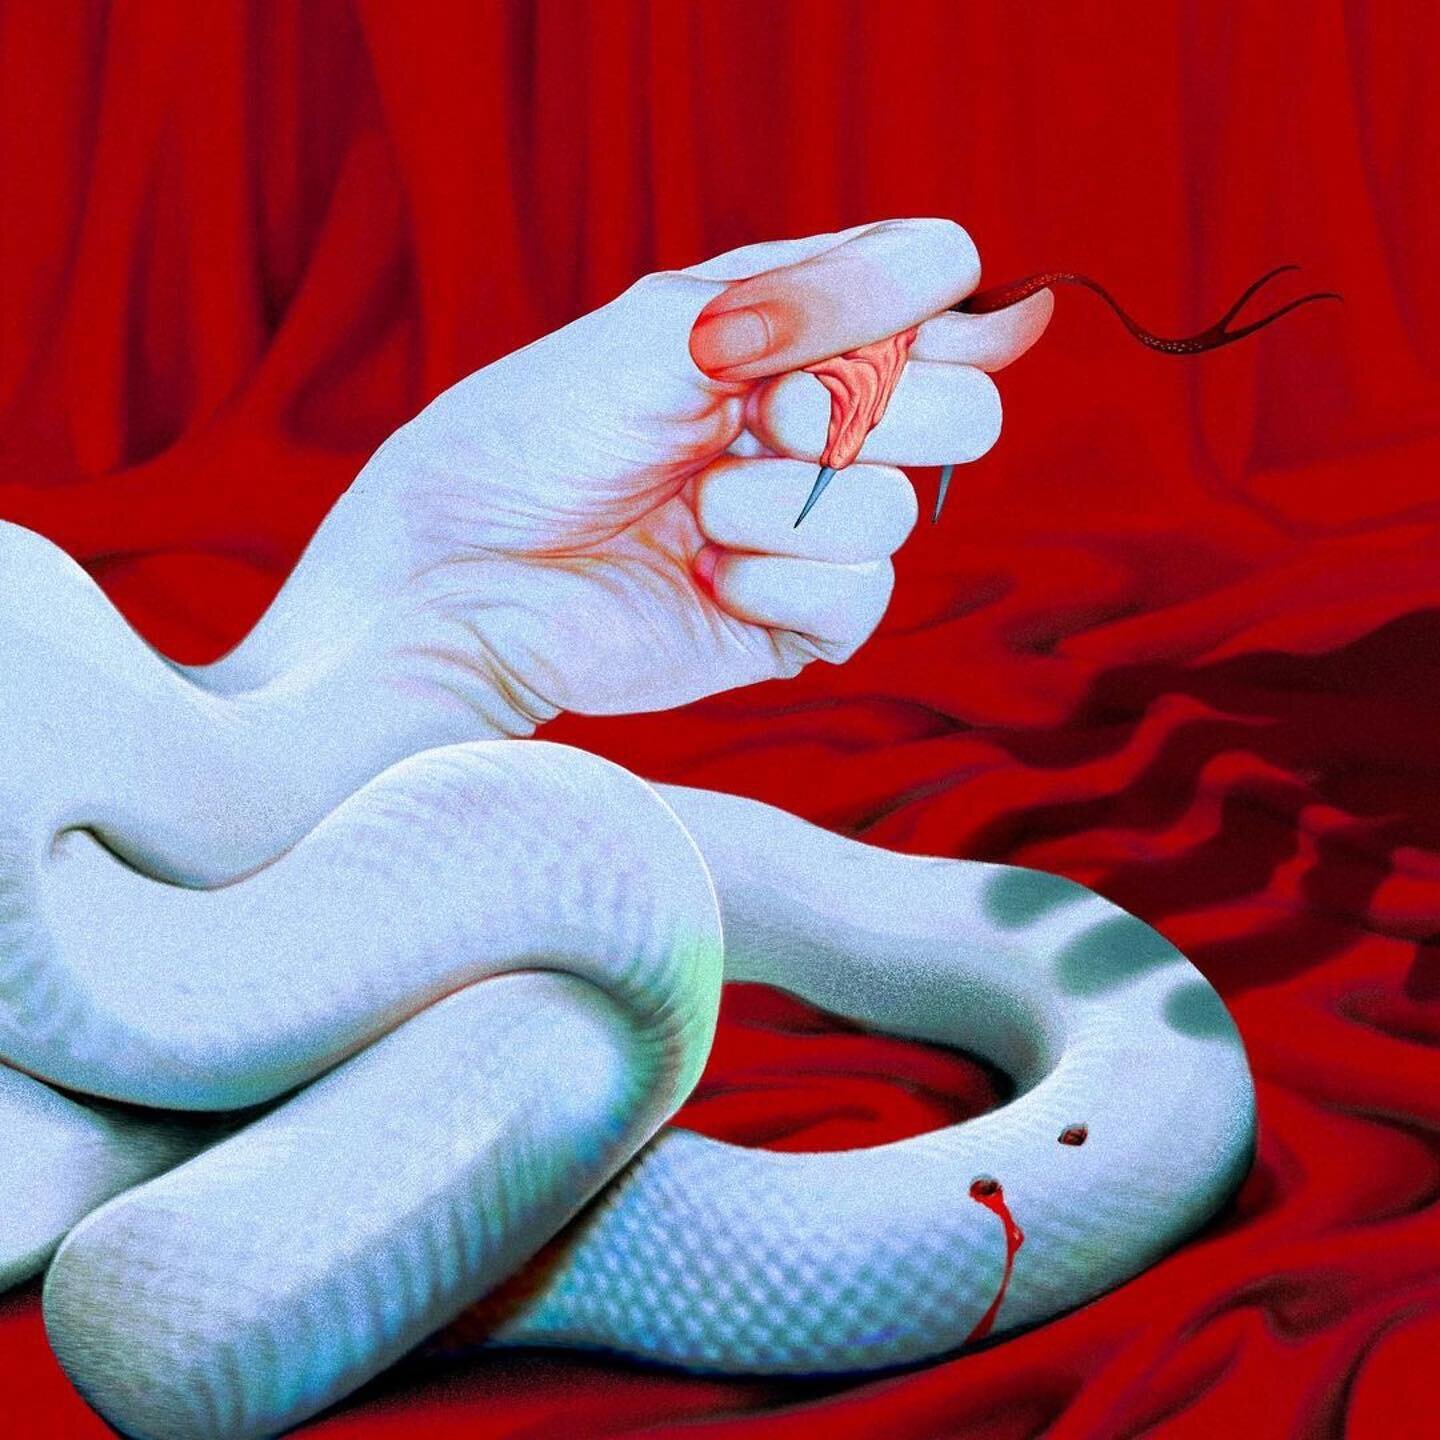 Snake by @silllllllllllll.da

#snake #silda #illustration #inspiration